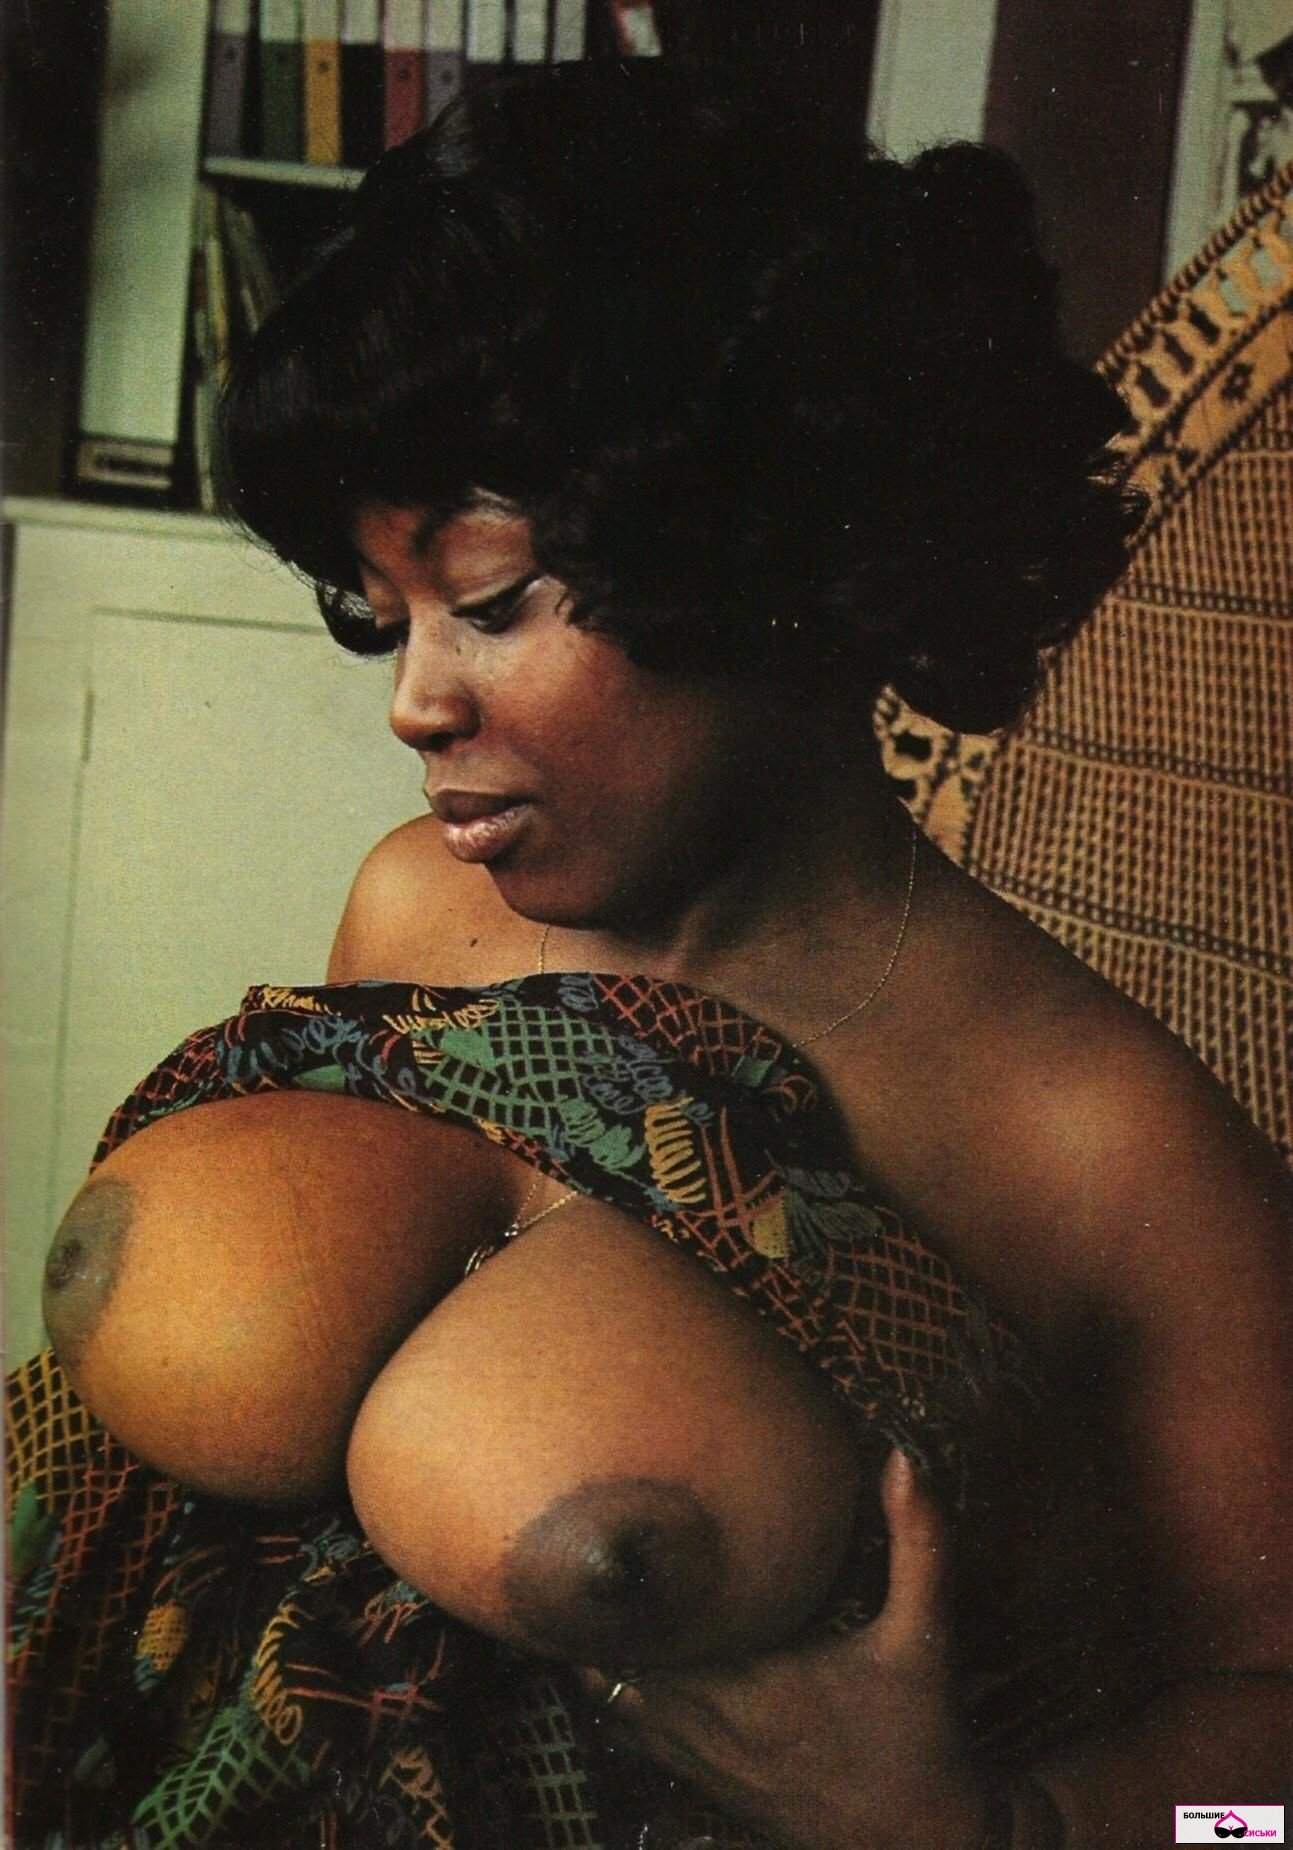 Retro Black Girl Porn - Black Boobs Vintage - 53 photos